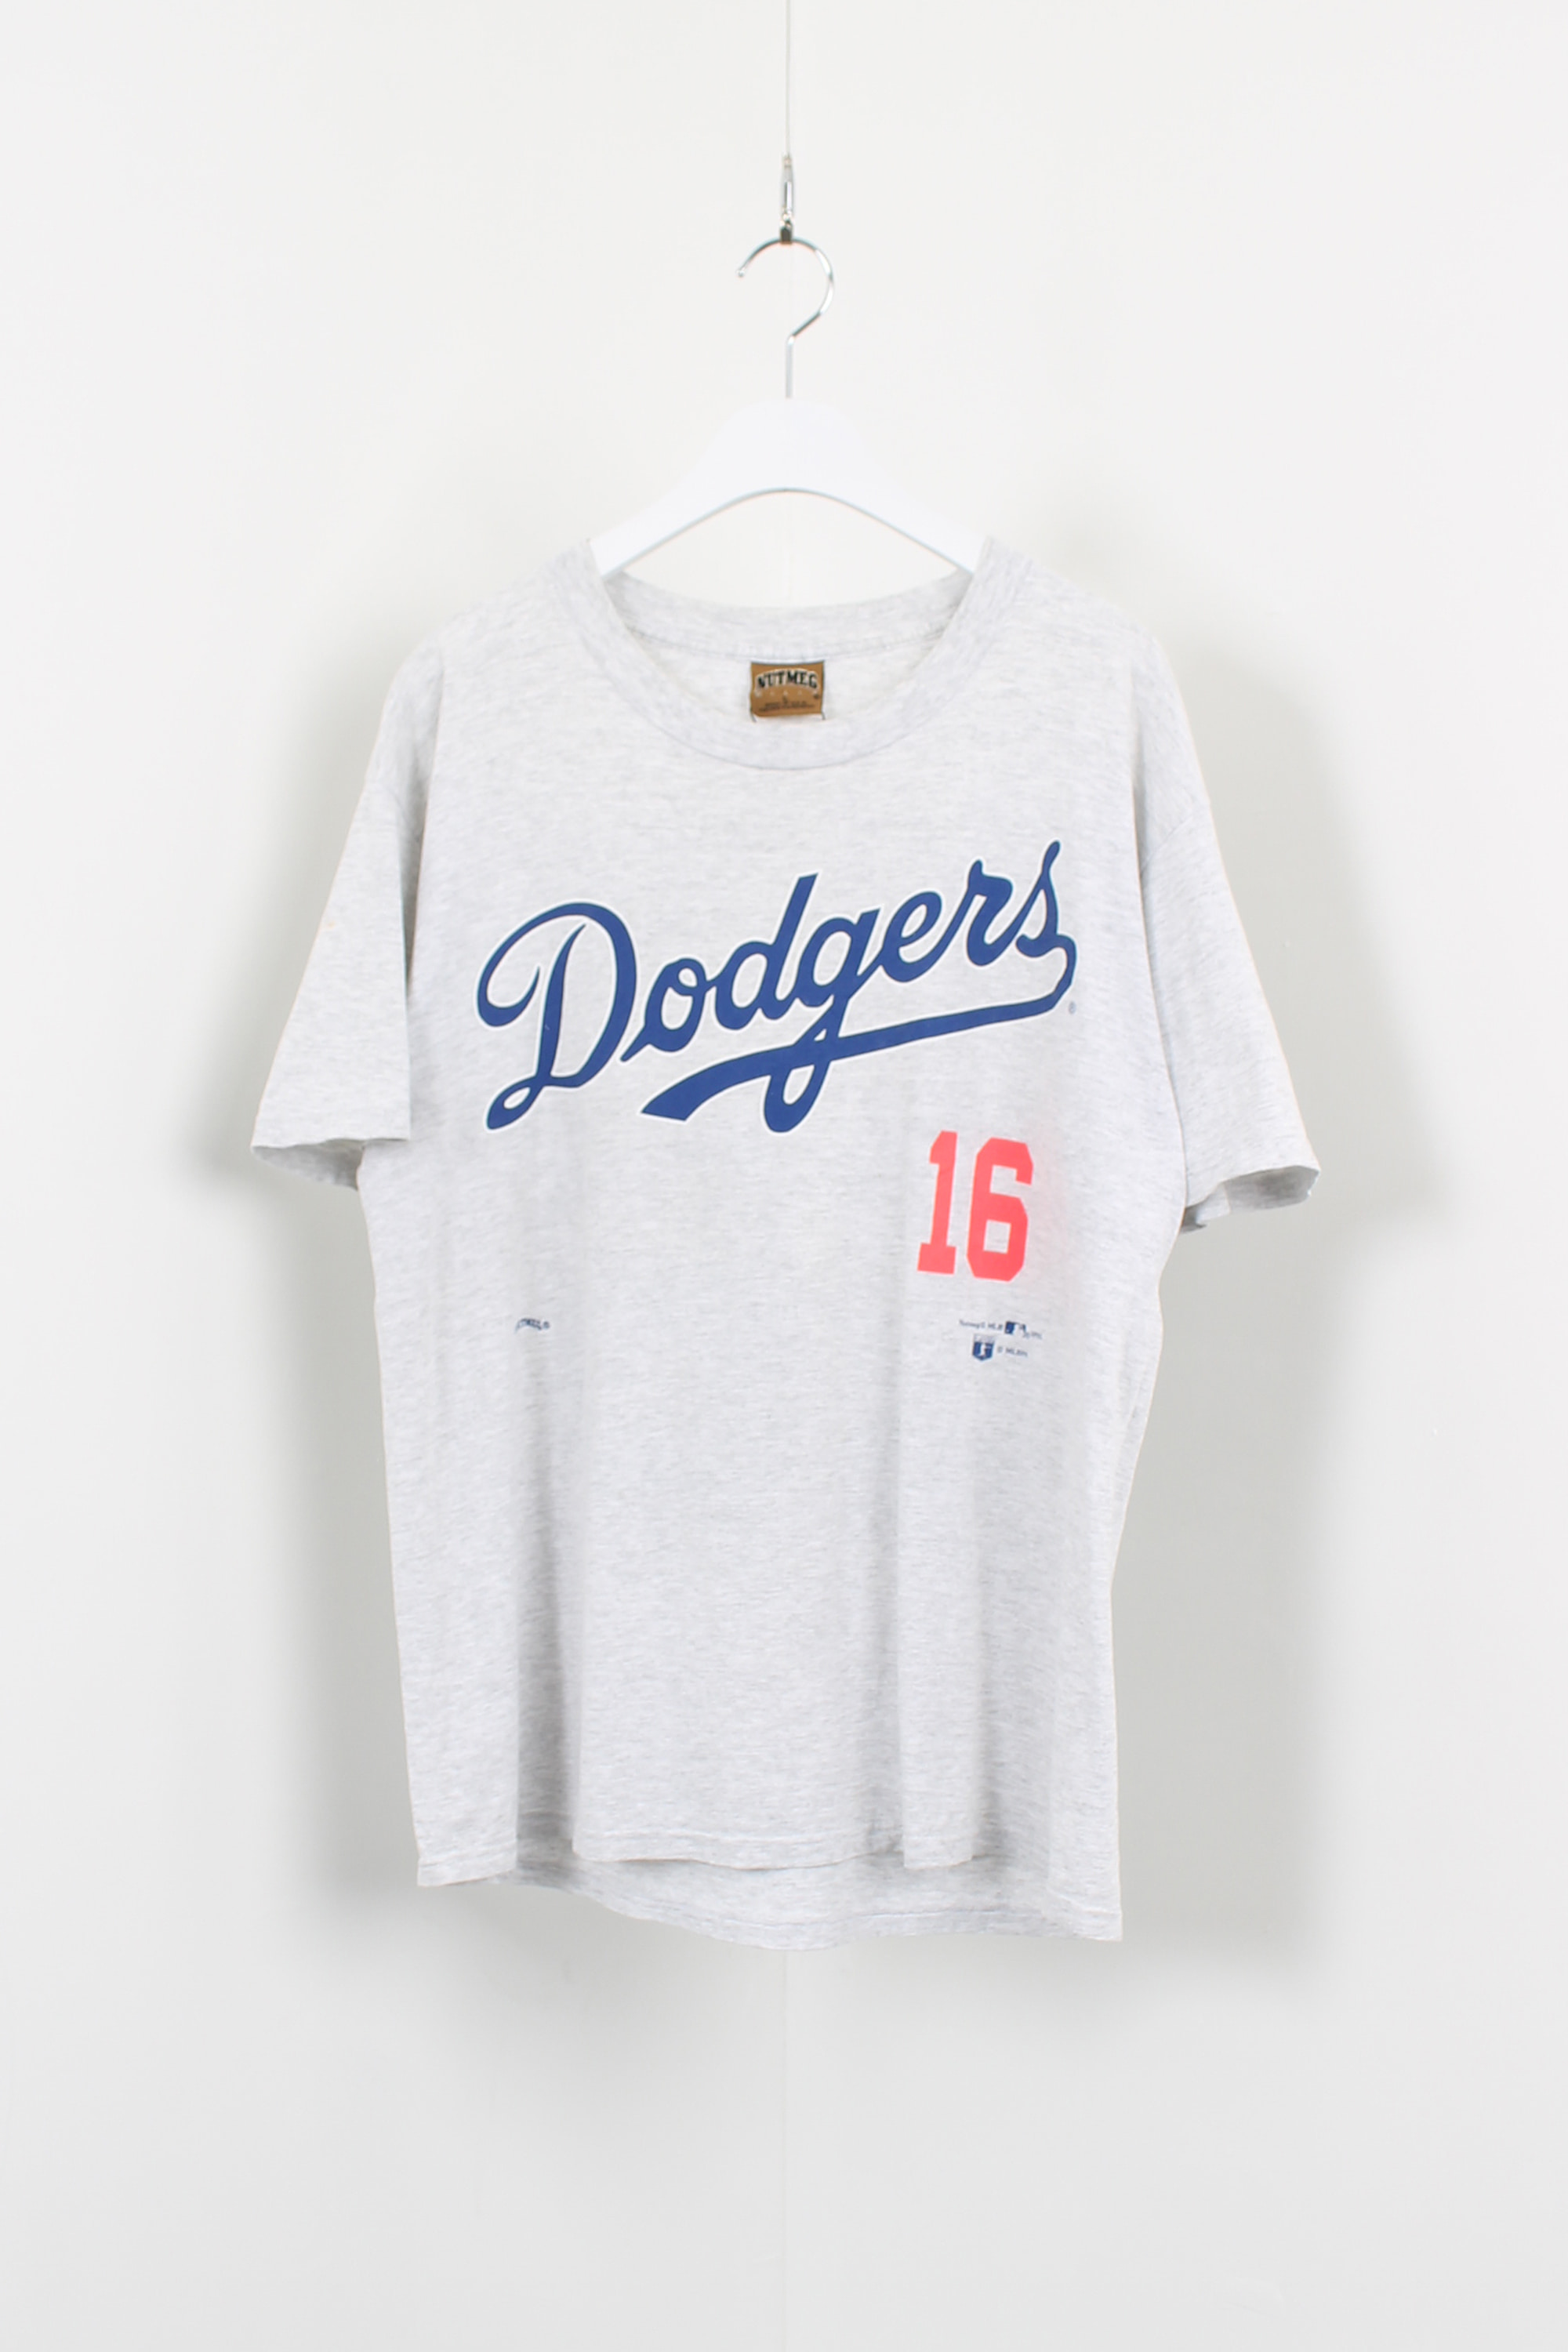 1995 MLB Hideo Nomo 16 T shirt